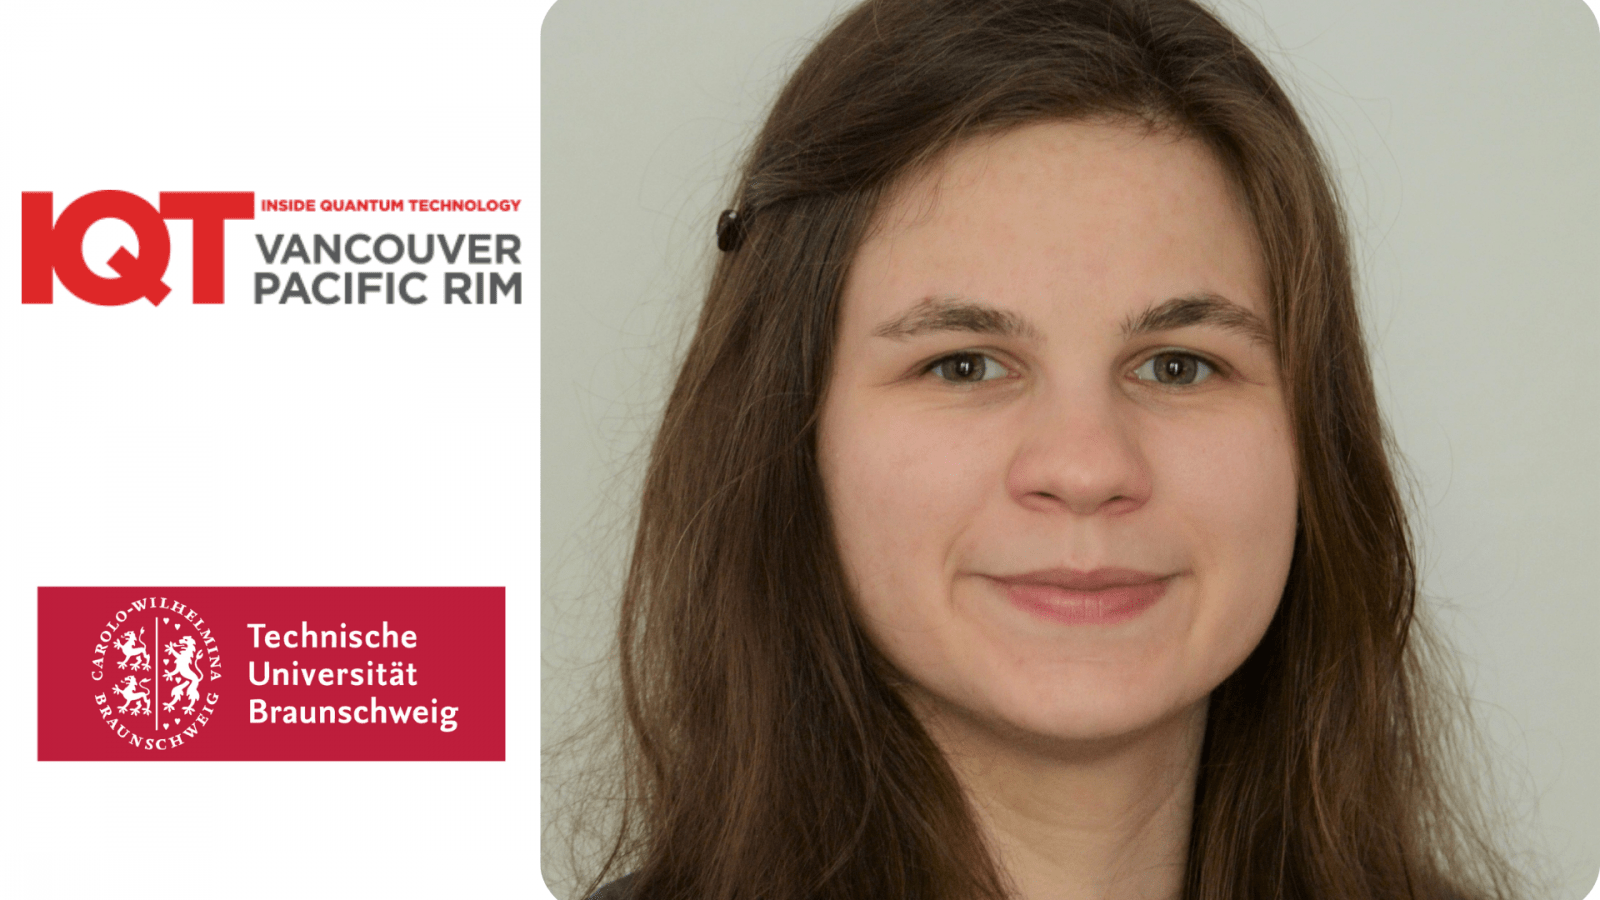 Franziska Greinert, wissenschaftliche Mitarbeiterin an der Technischen Universität Braunschweig, ist IQT Vancouver/Pacific Rim Speaker für die Konferenz 2024